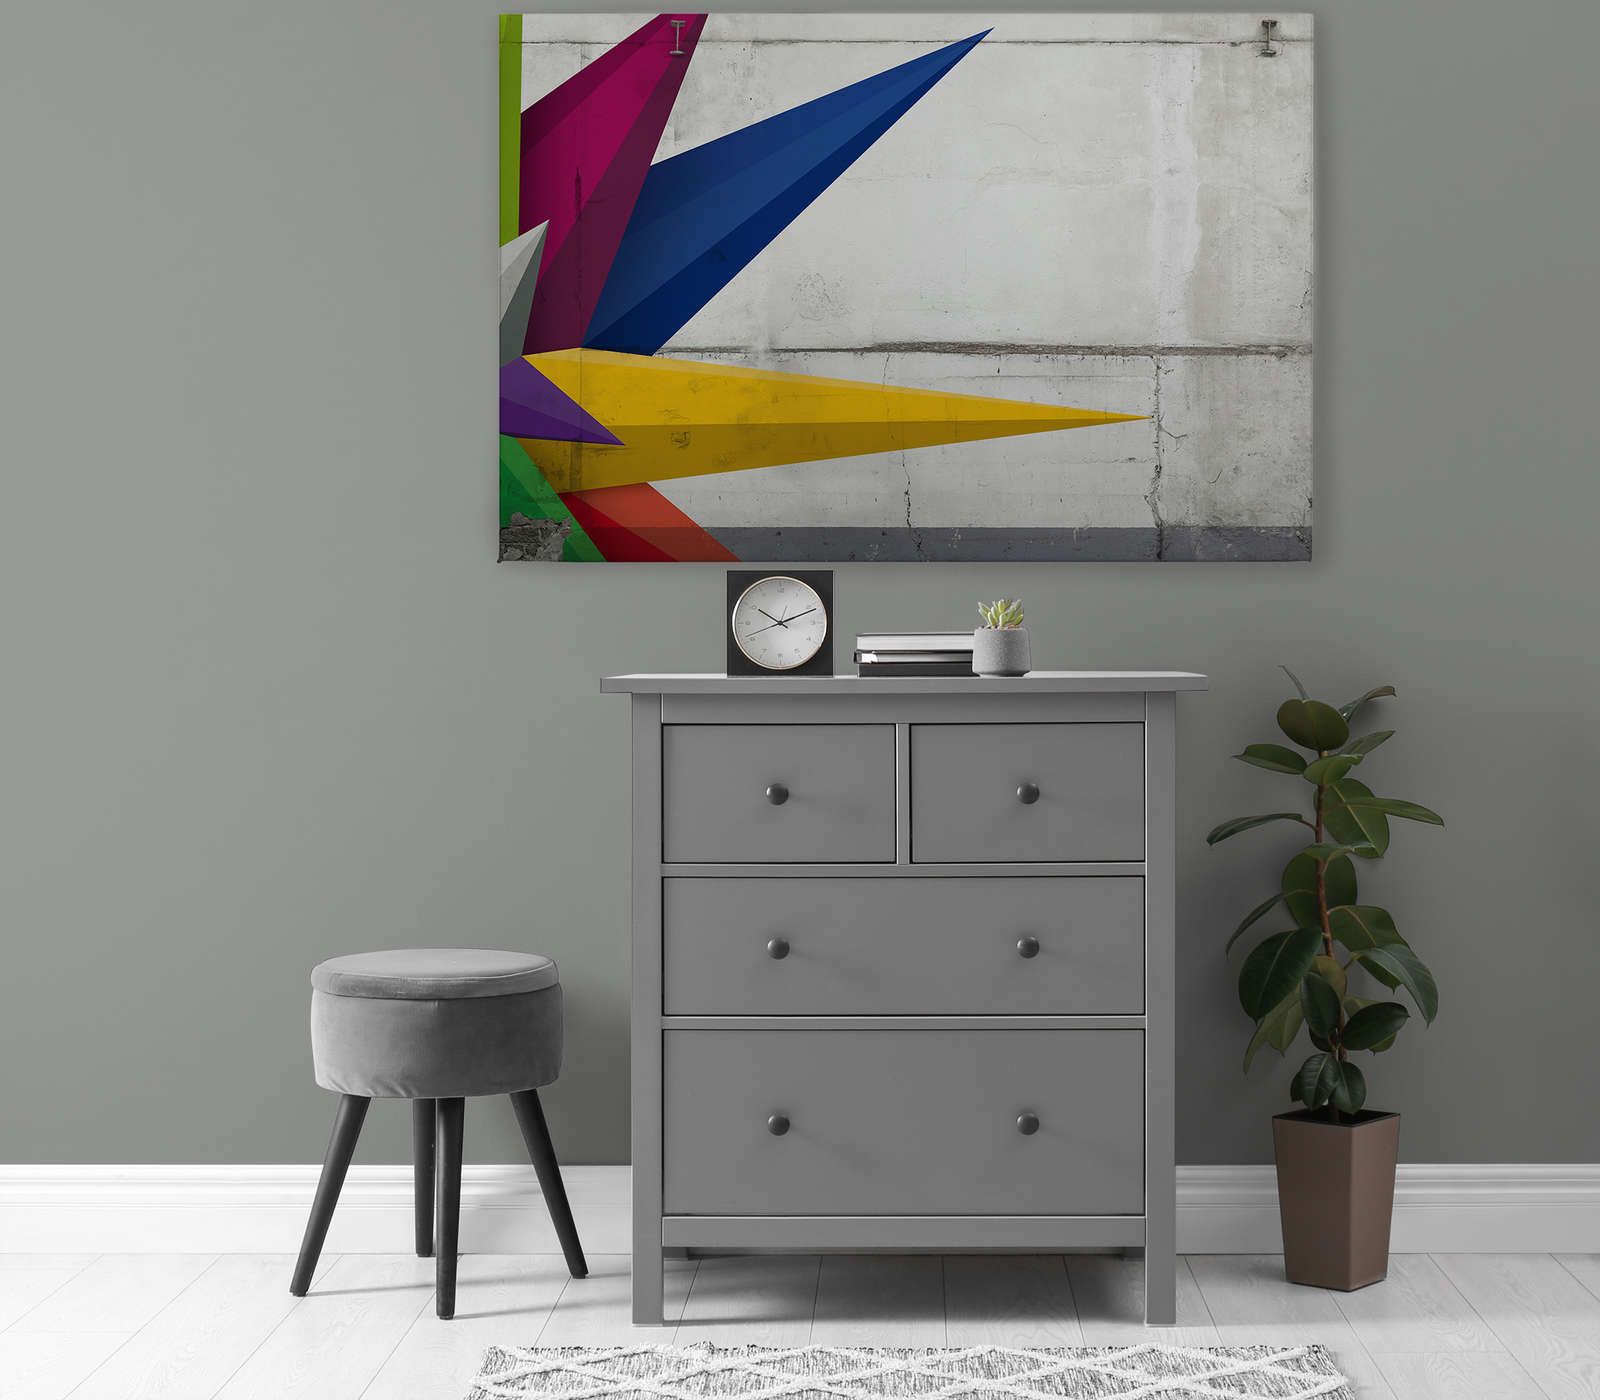             Pittura su tela effetto cemento con grafica - 1,20 m x 0,80 m
        